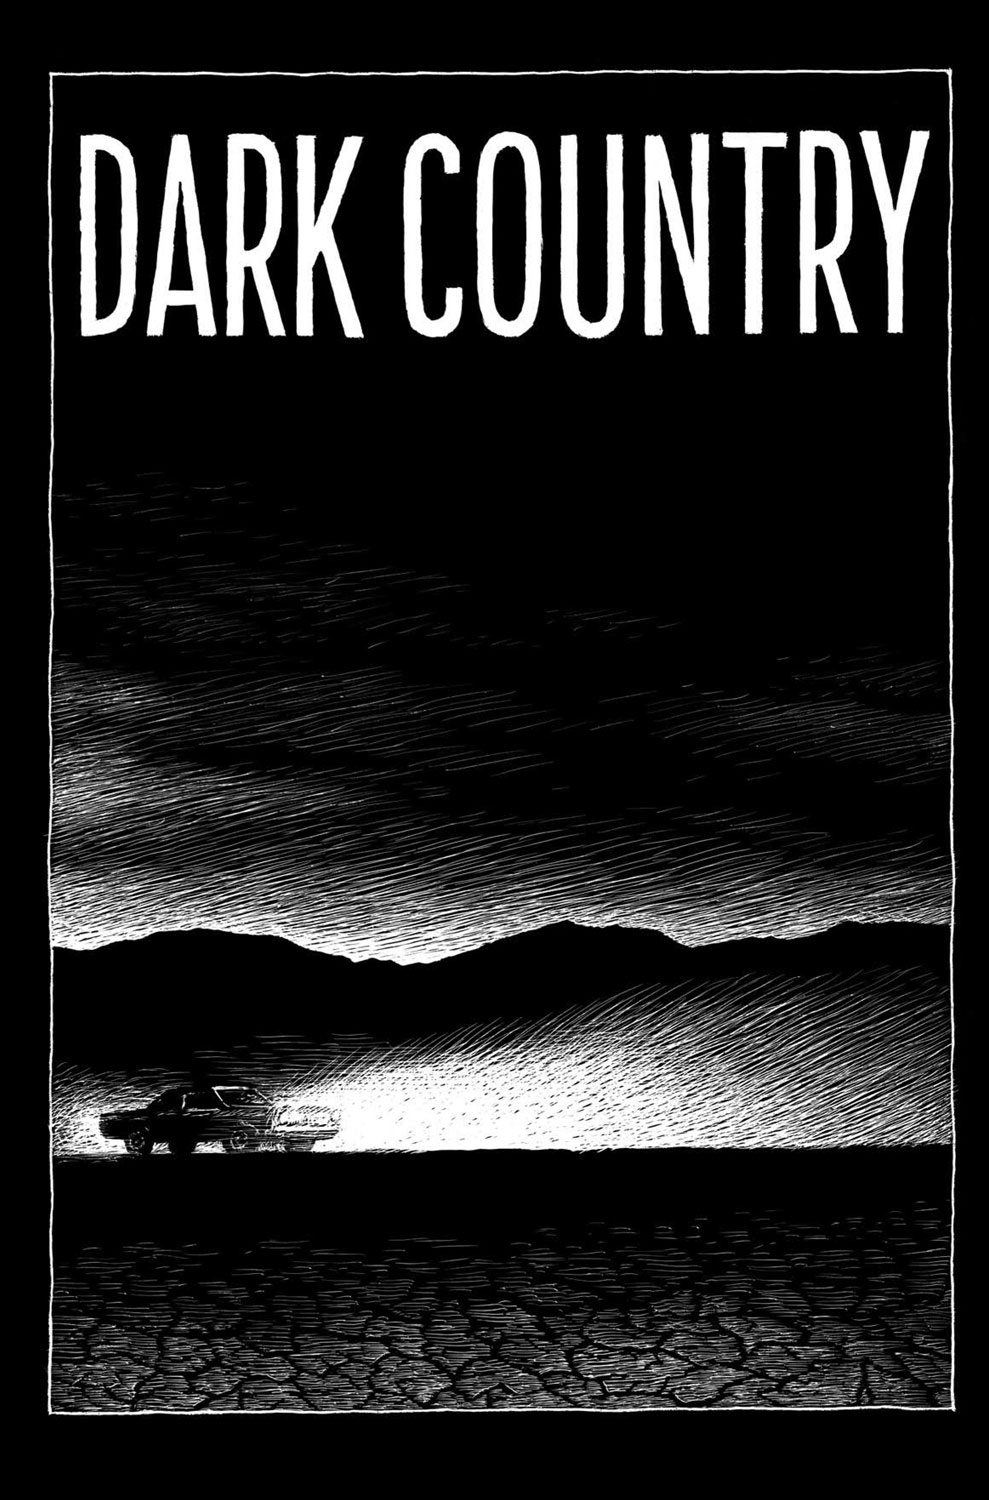 RAW Studio's Dark Country